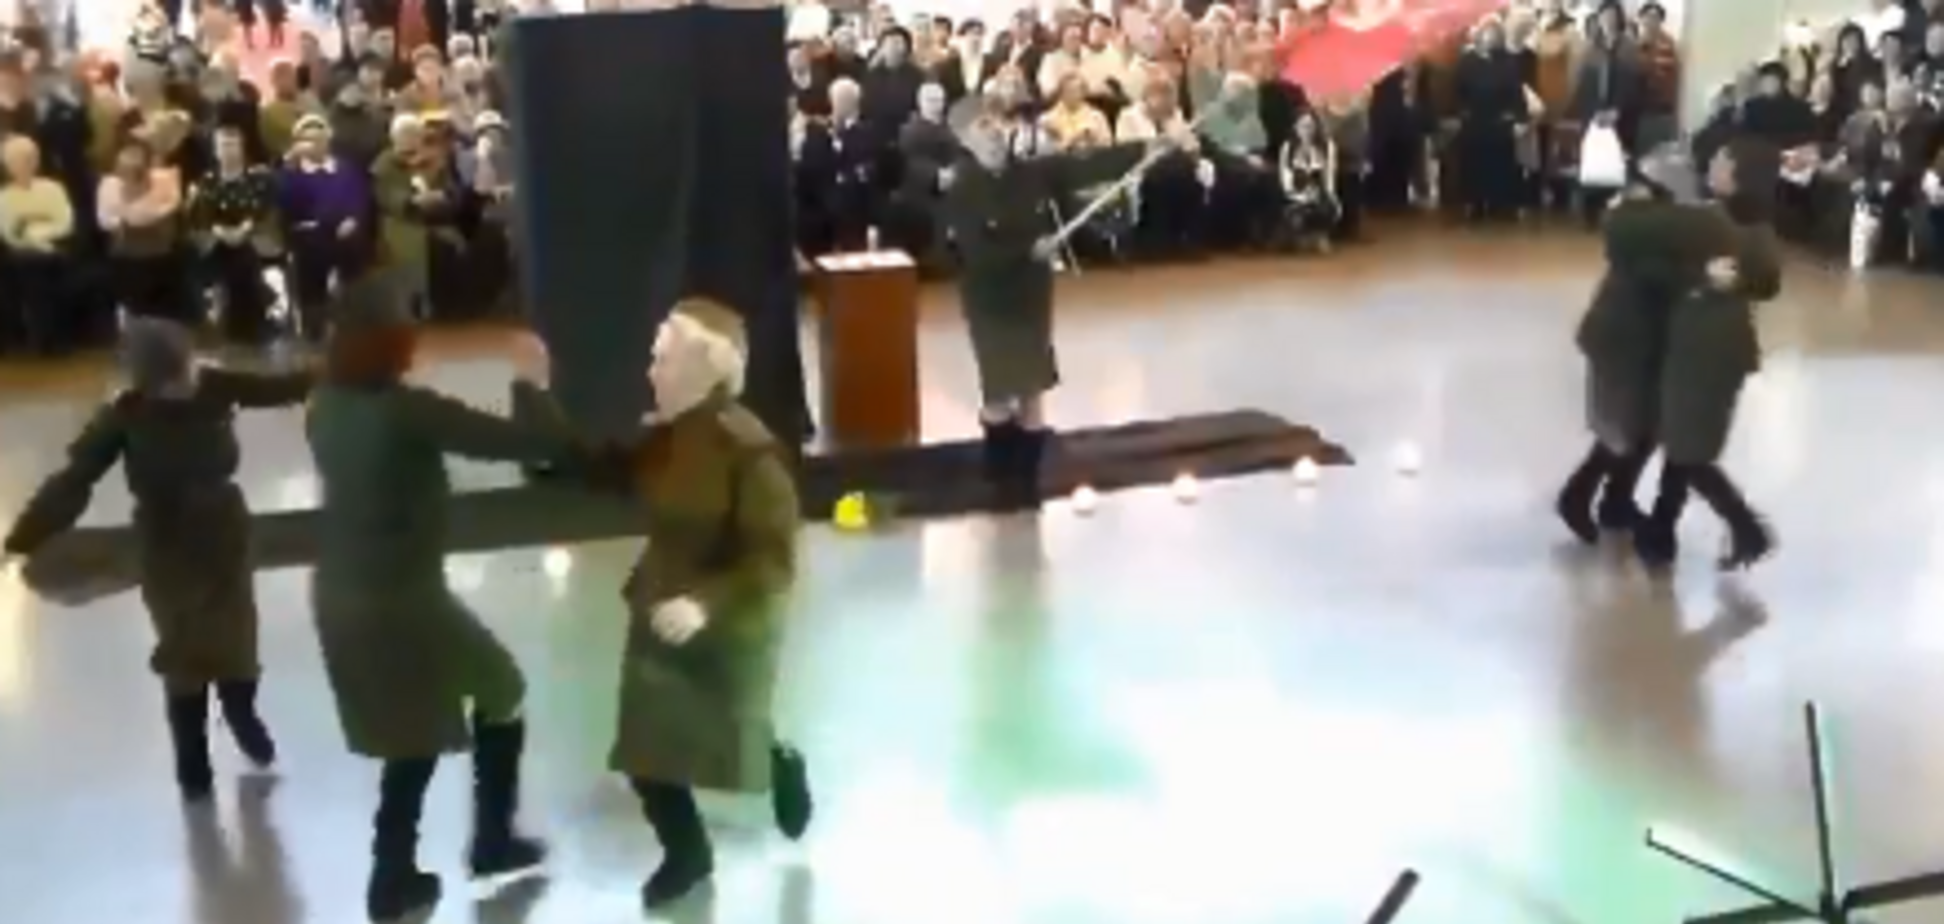 Застряли в войне: сеть взбудоражил 'фронтовой' танец в России